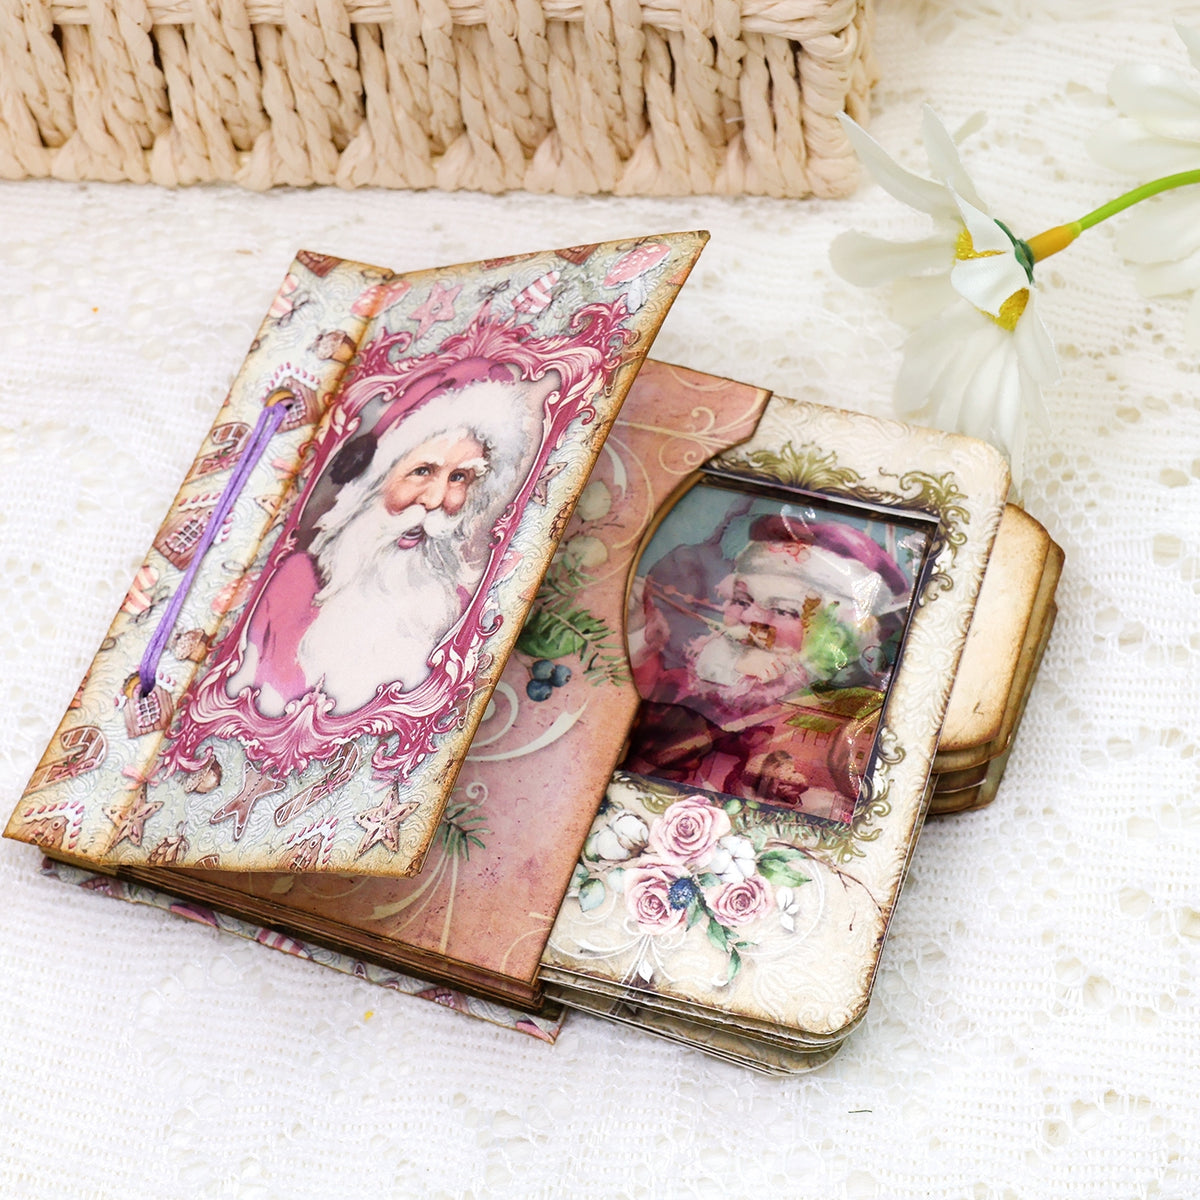 Pink Santa Mini Photo & Notes Album Craft Kit - DIY Gift 2